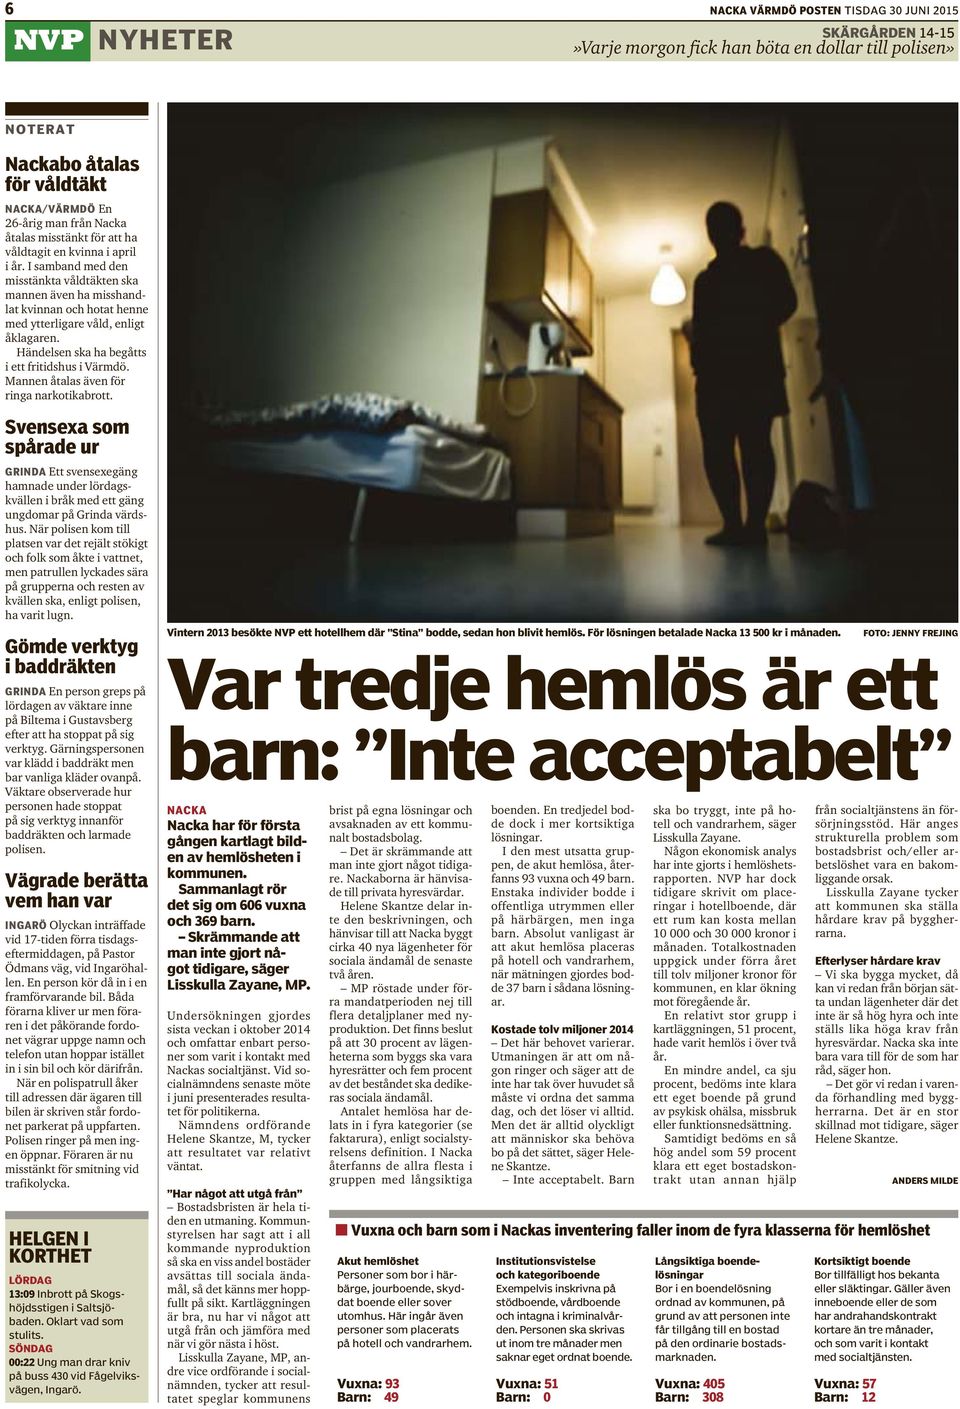 Händelsen ska ha begåtts i ett fritidshus i Värmdö. Mannen åtalas även för ringa narkotikabrott.